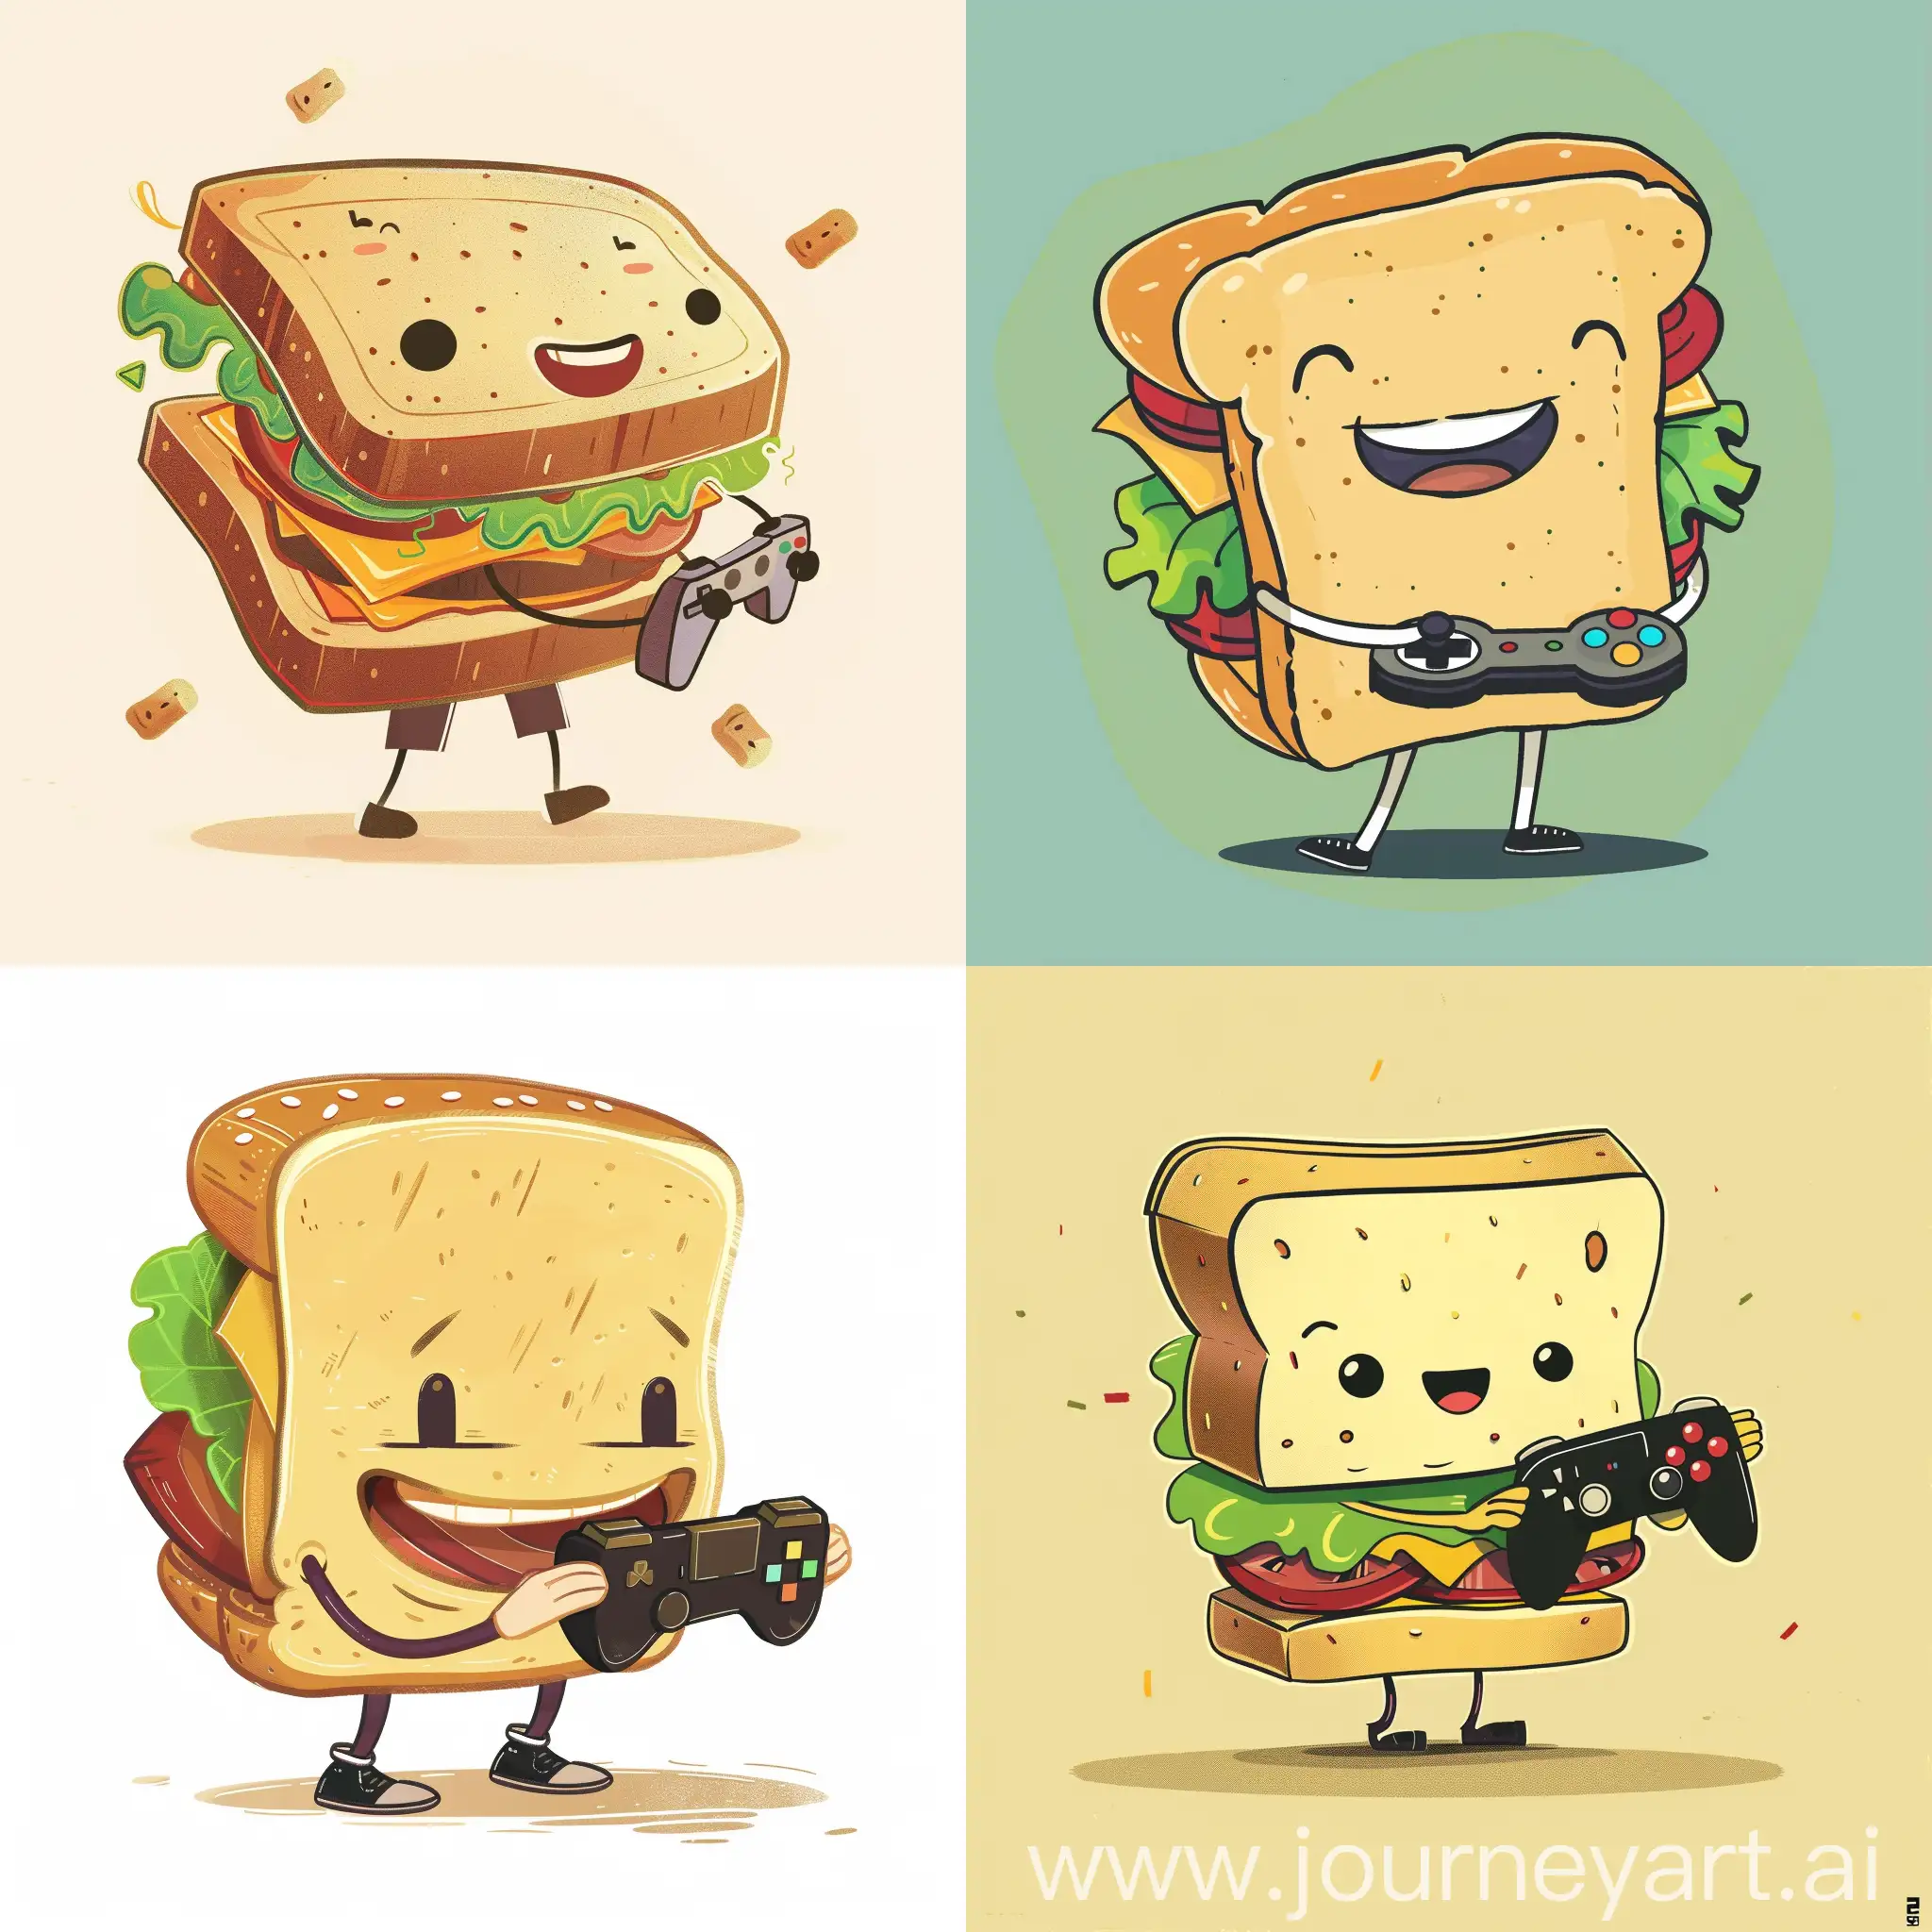 卡通风格，一个拟人化的三明治正在拿着游戏手柄打游戏，微笑